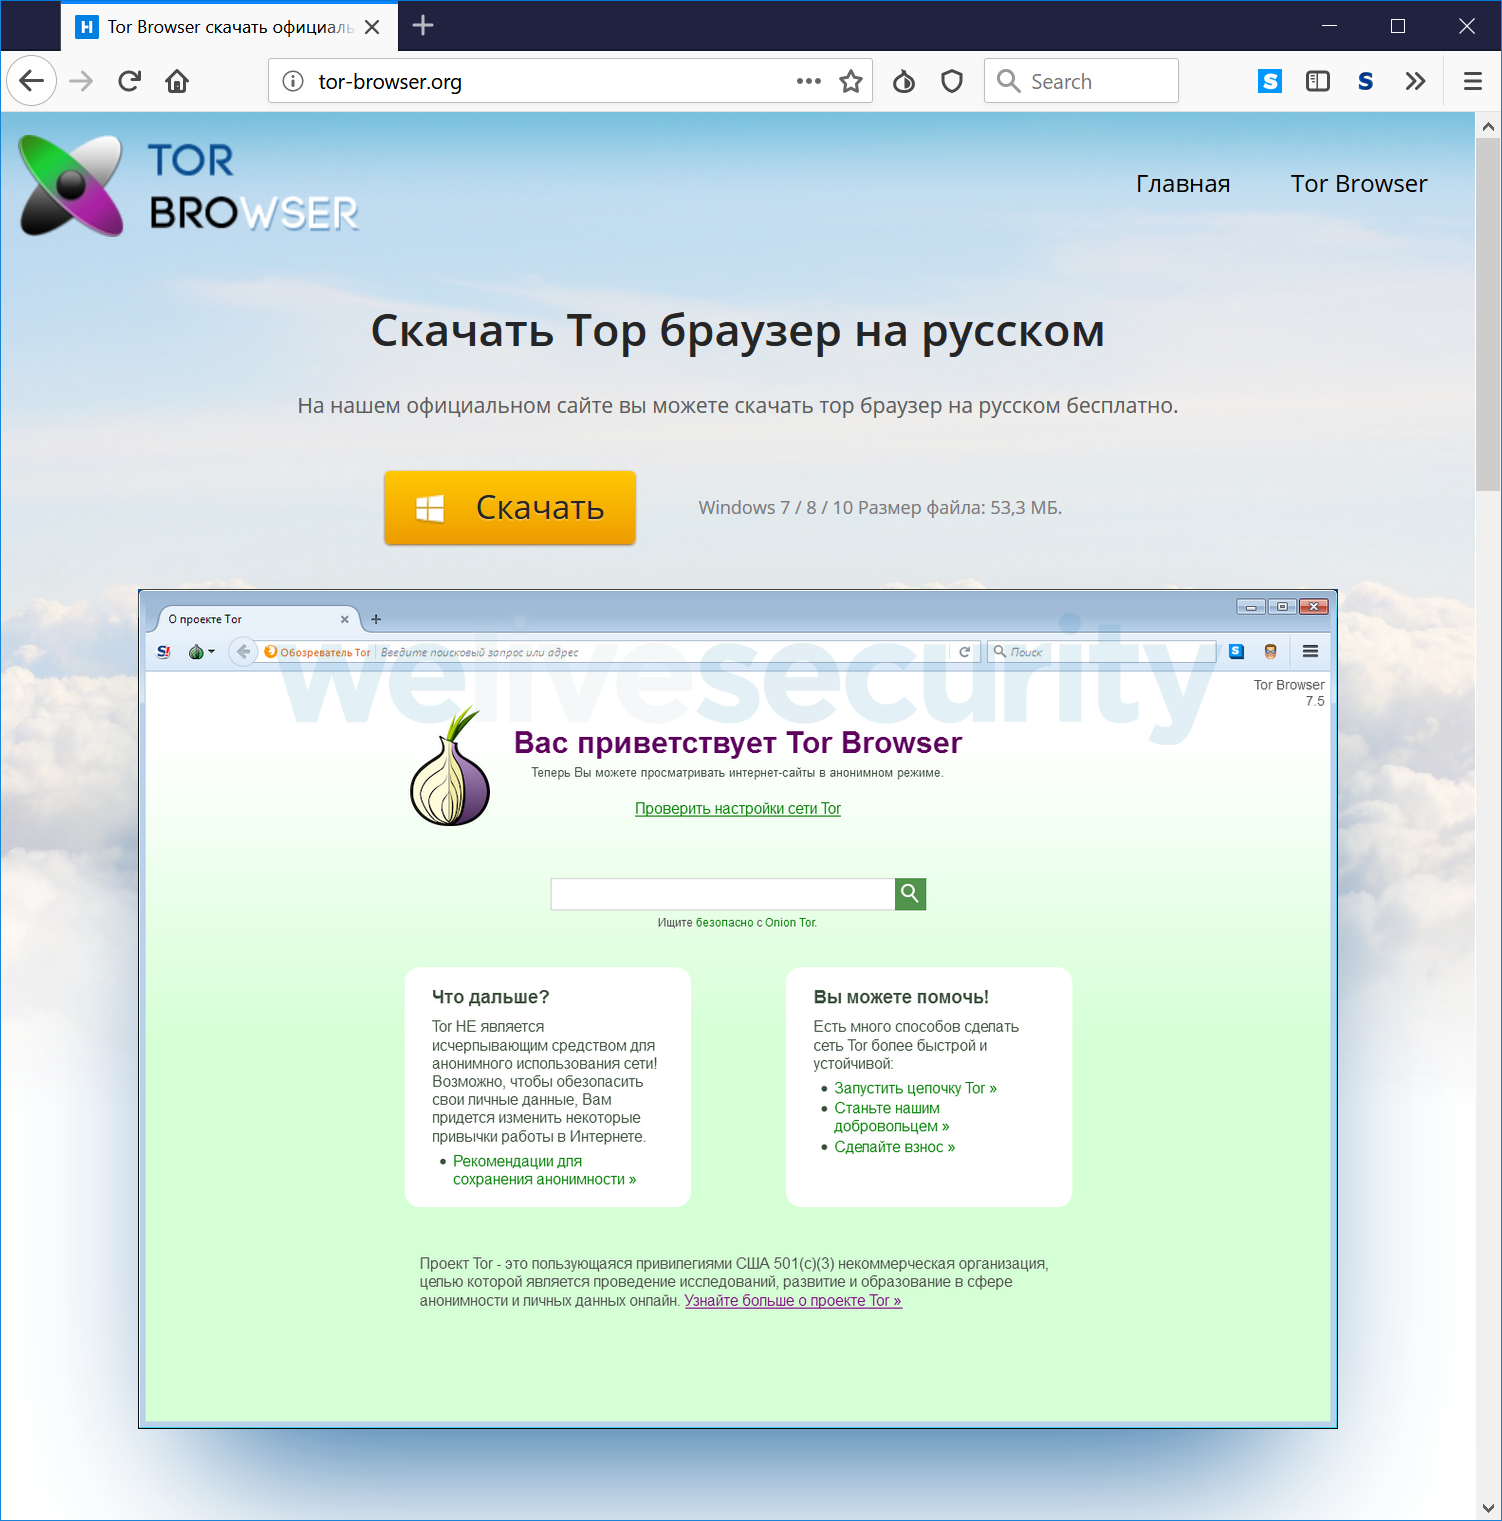 Скачать браузер тор официальный mega вход скачать браузер тор на русском через торрент мега